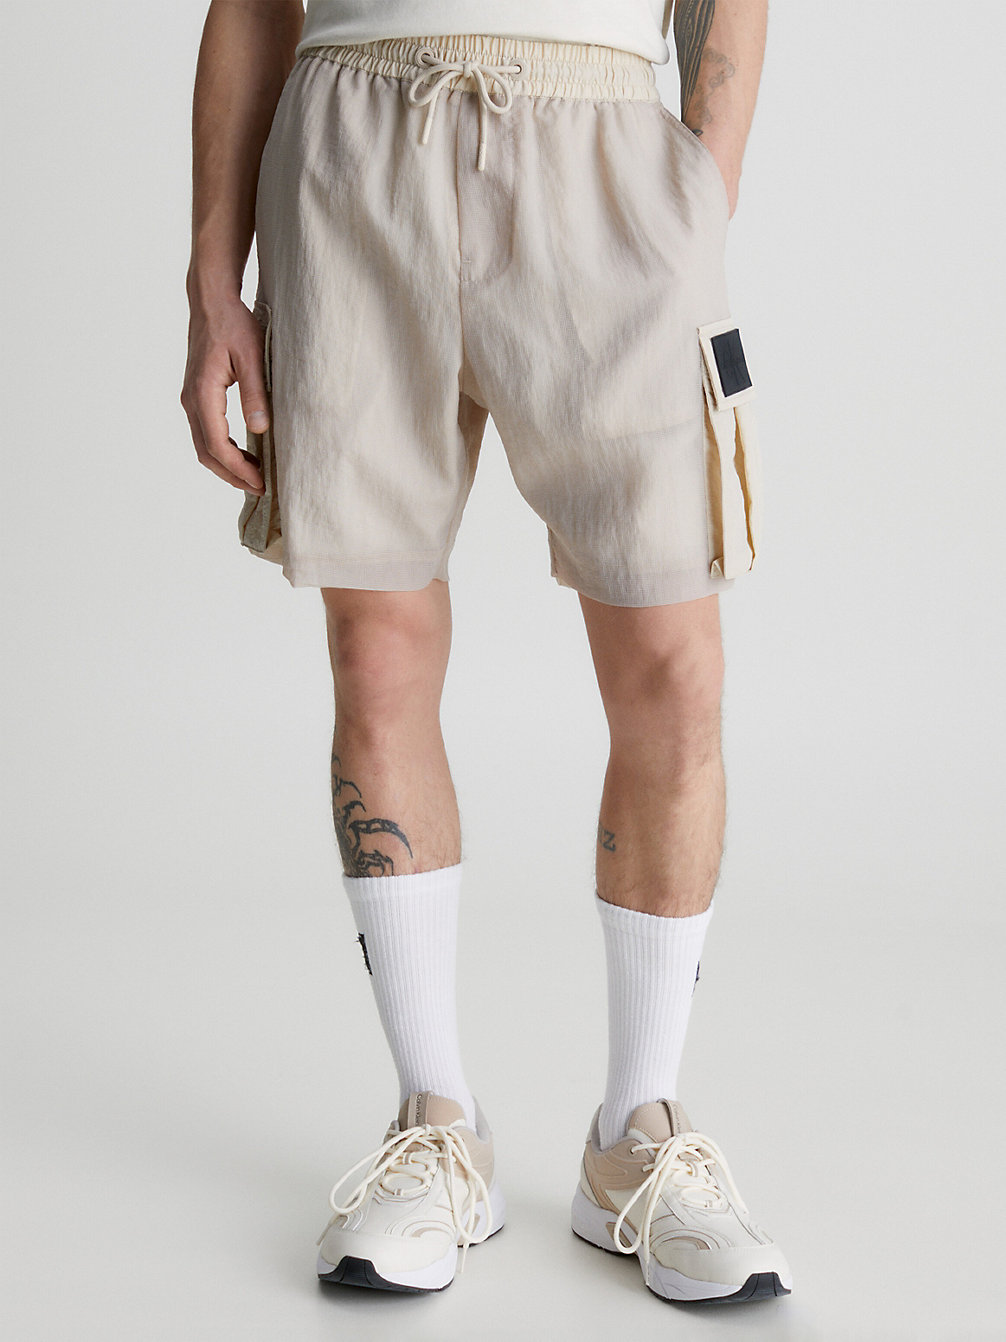 Pantaloncini Cargo In Rete E Nylon Taglio Relaxed > CLASSIC BEIGE > undefined uomo > Calvin Klein